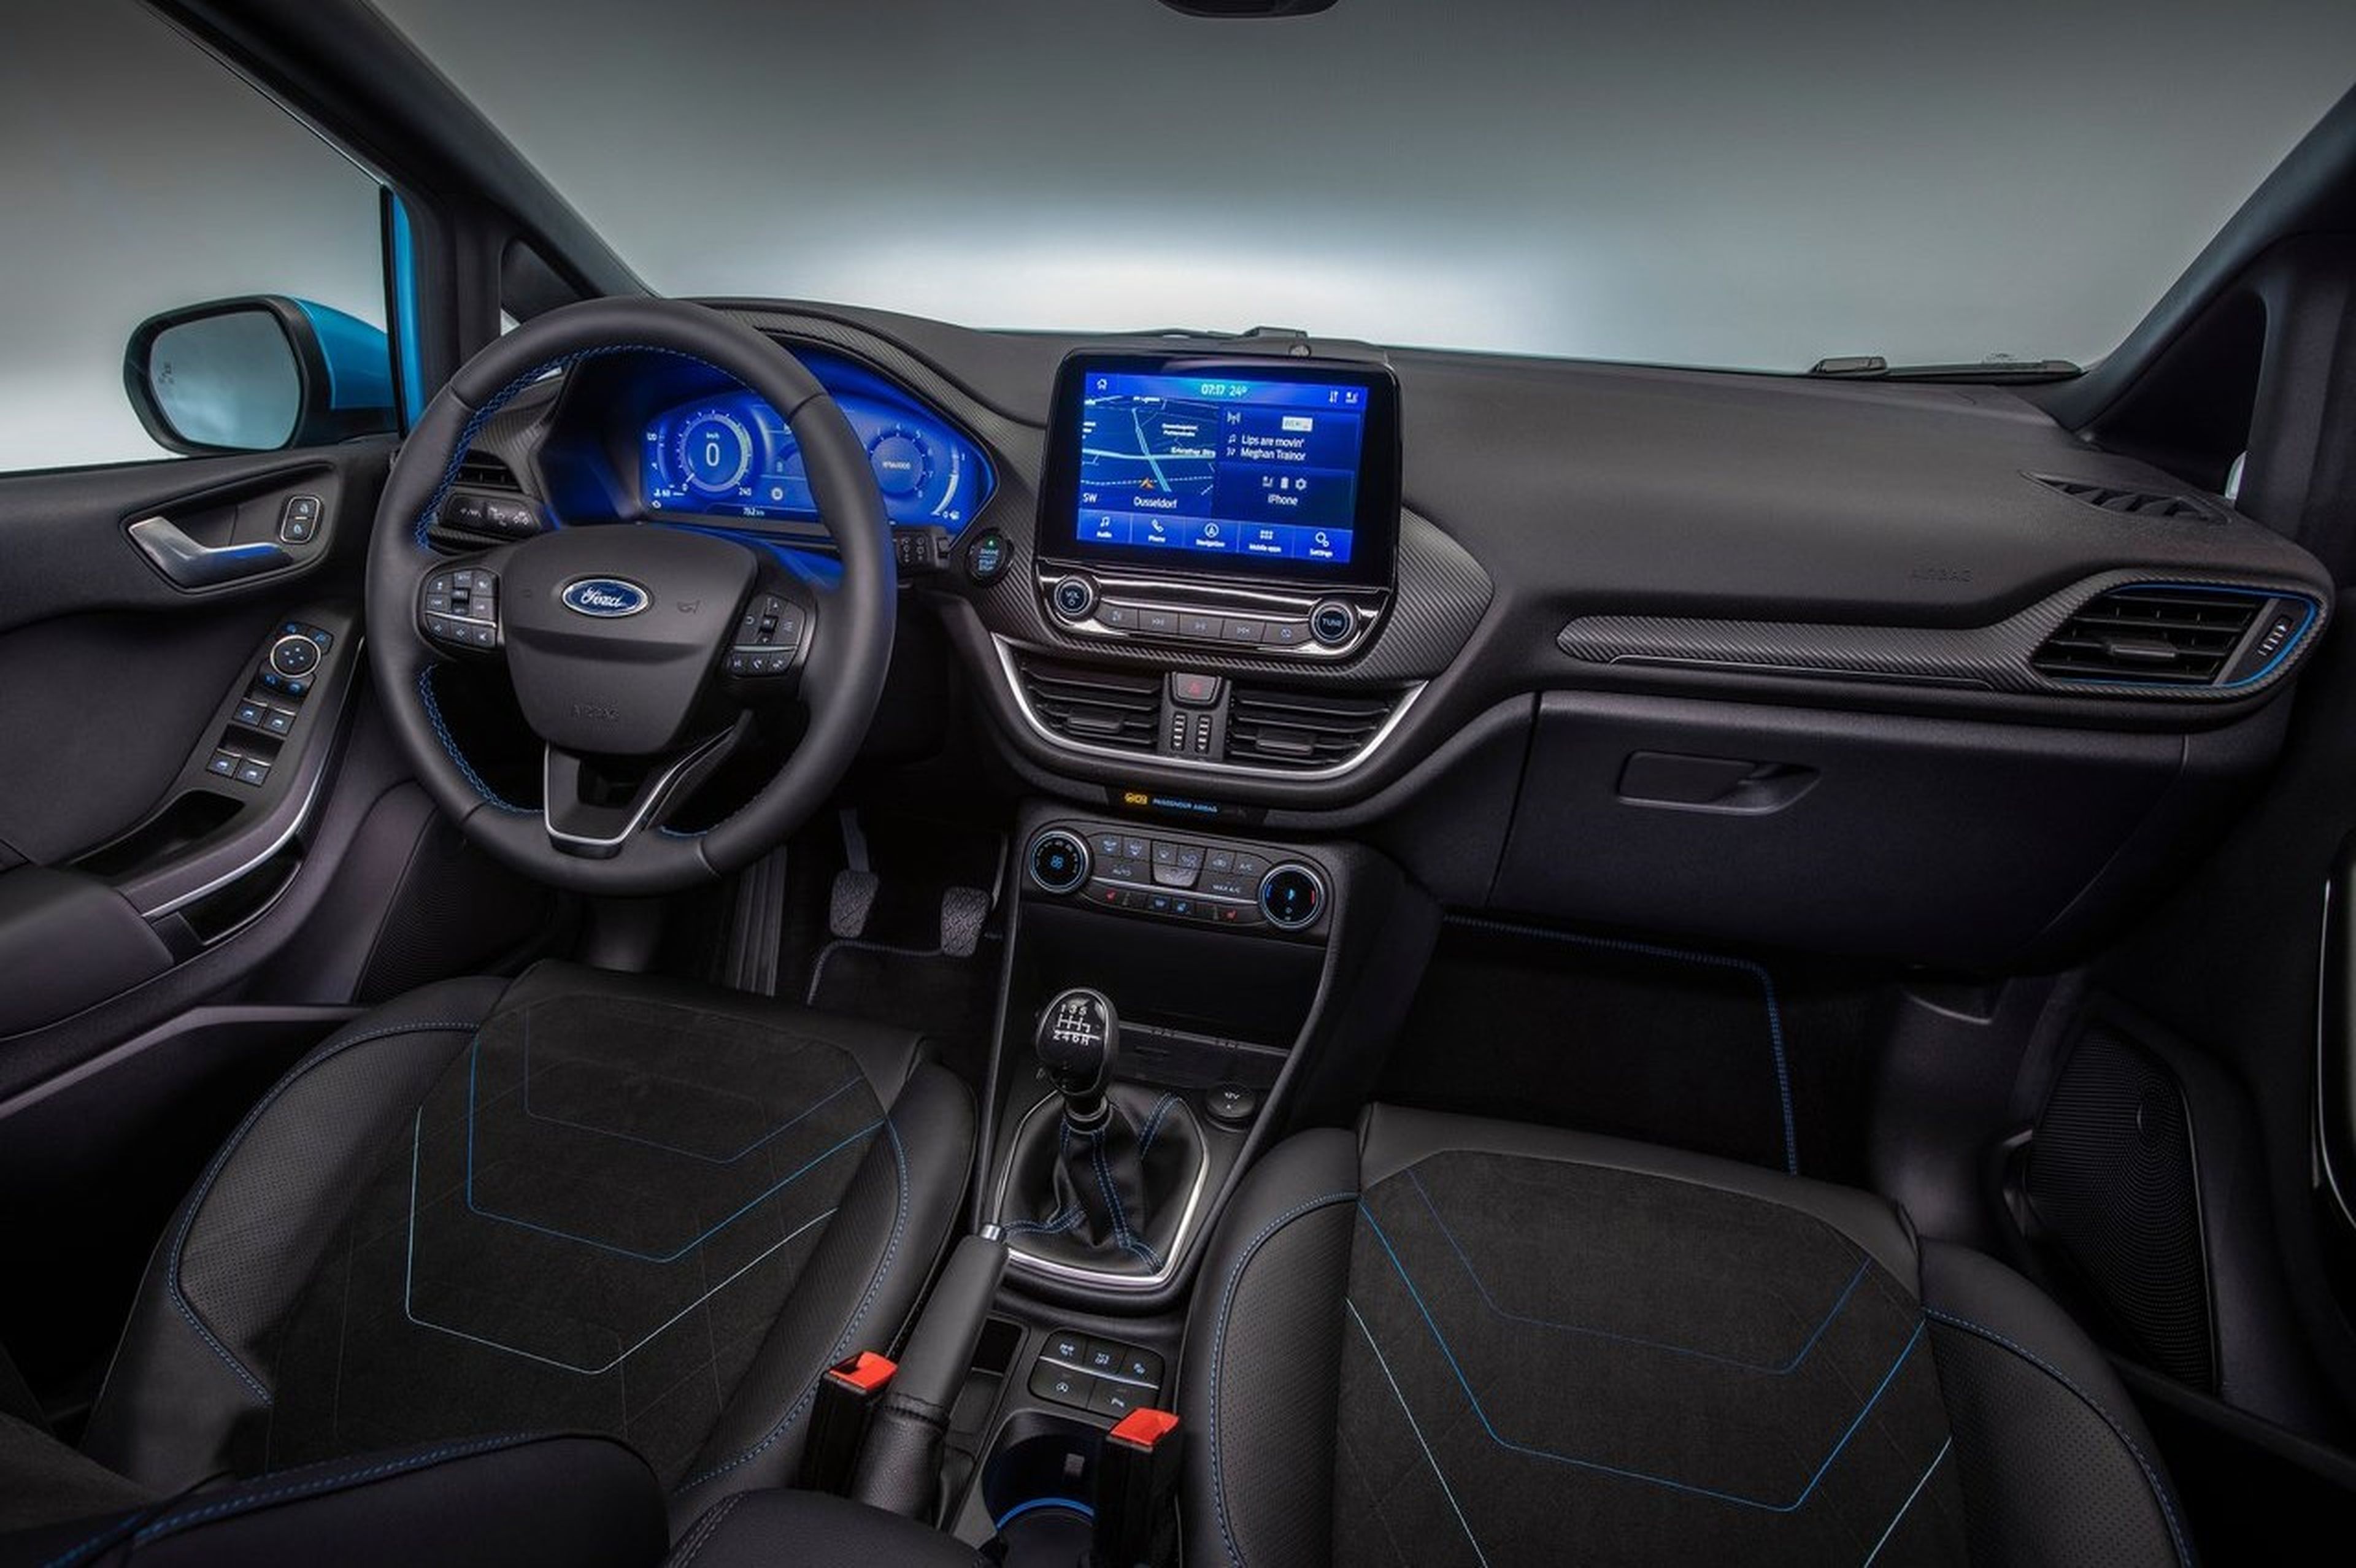 Ford Fiesta 2022, dónde ha cambiado a mejor y dónde podría mejorar